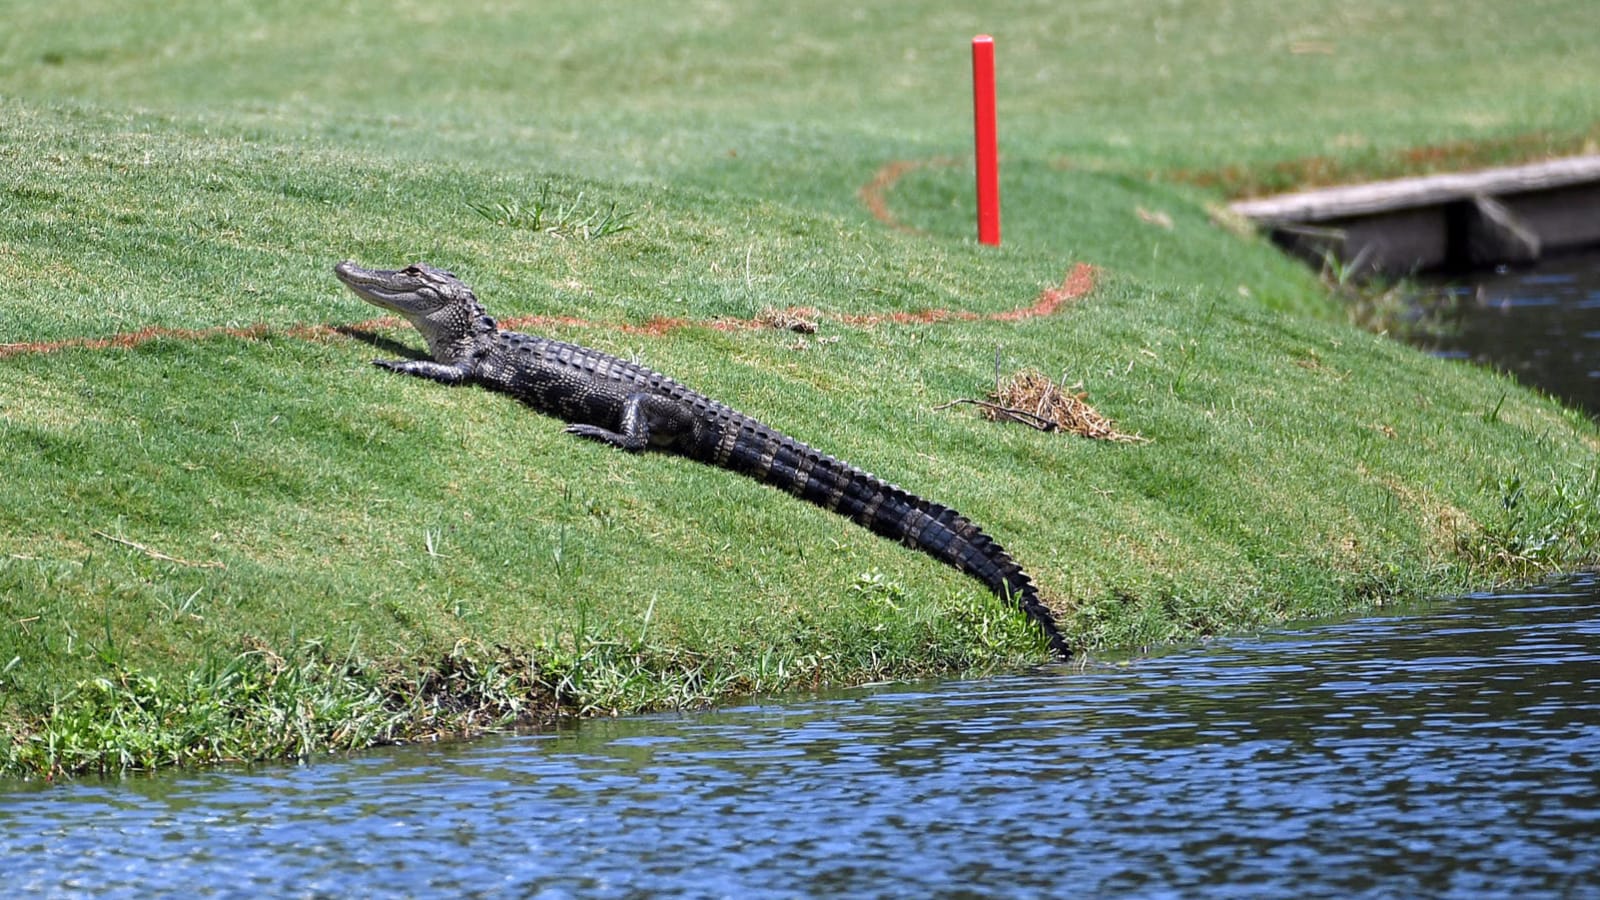 Massive alligator on Florida golf course goes viral